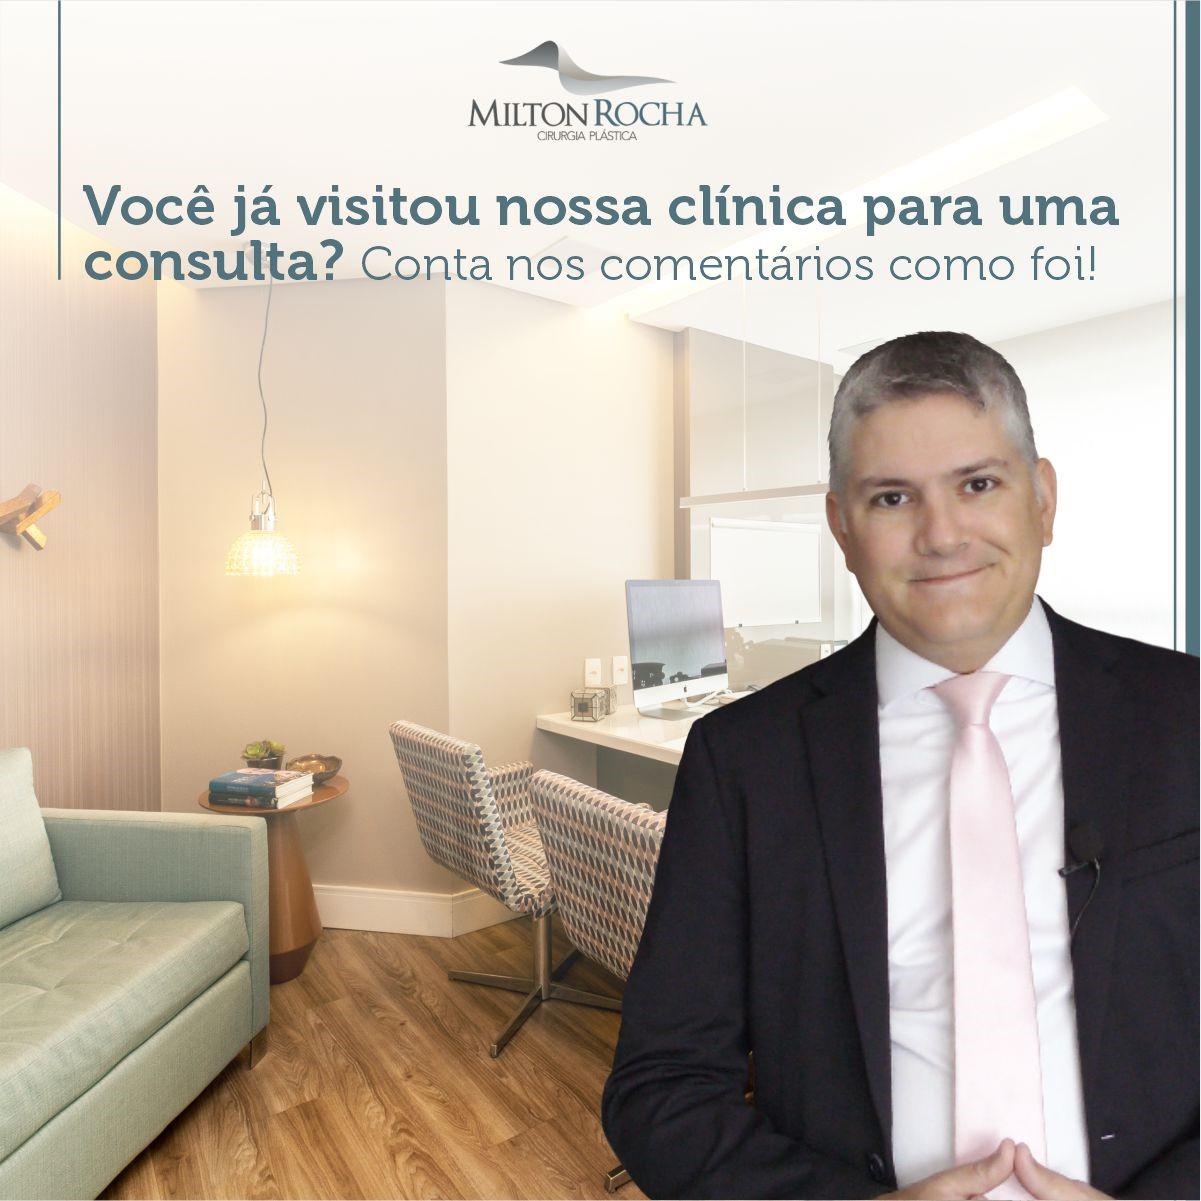 You are currently viewing Cirurgia Plástica Recife – Você já visitou nossa clínica para uma consulta?